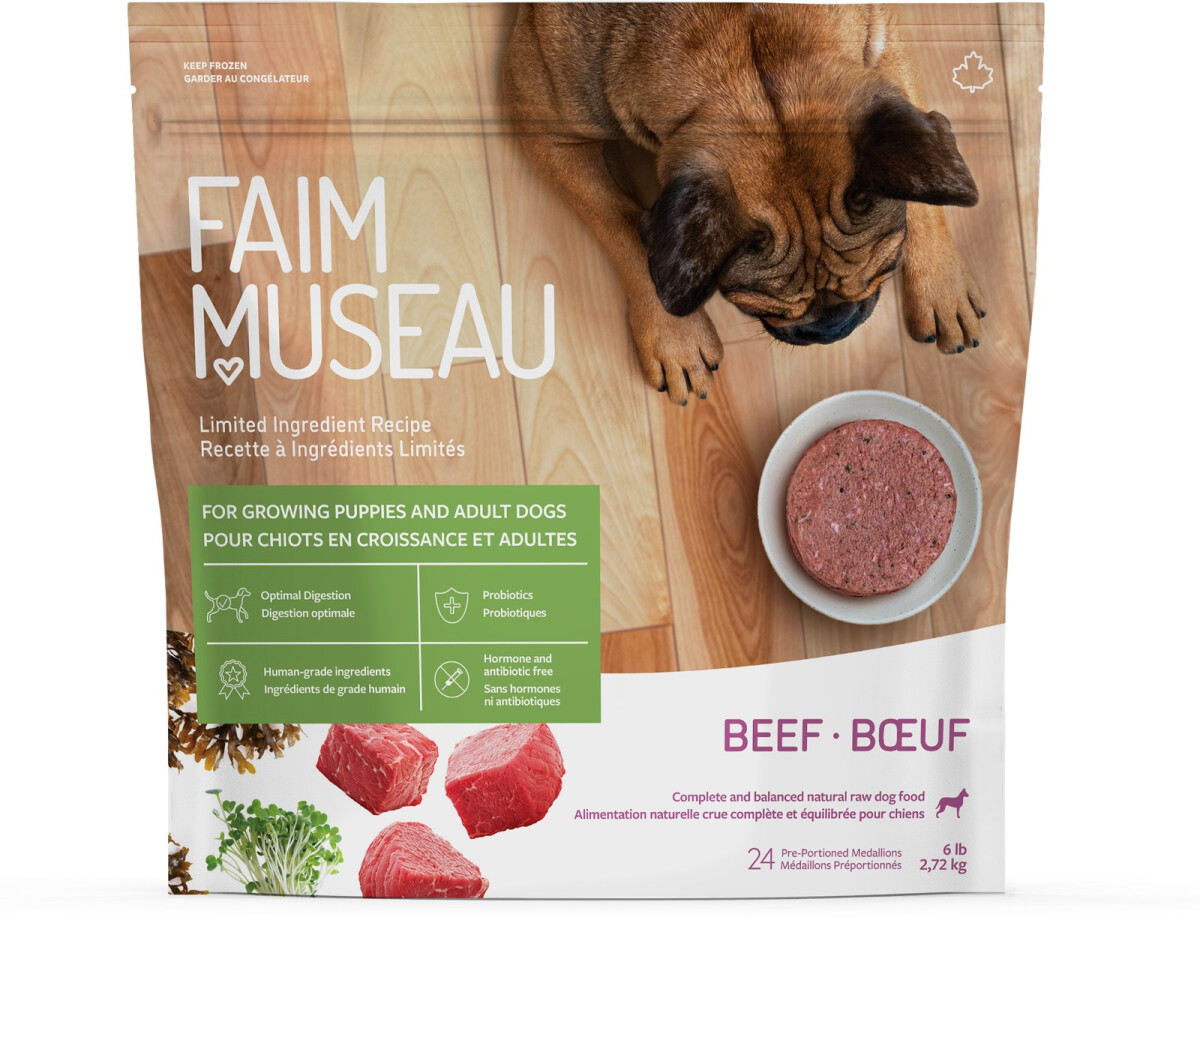 Fm290 - Nourriture crue recette ingrédients limités au boeuf pour chiens - Faim Museau